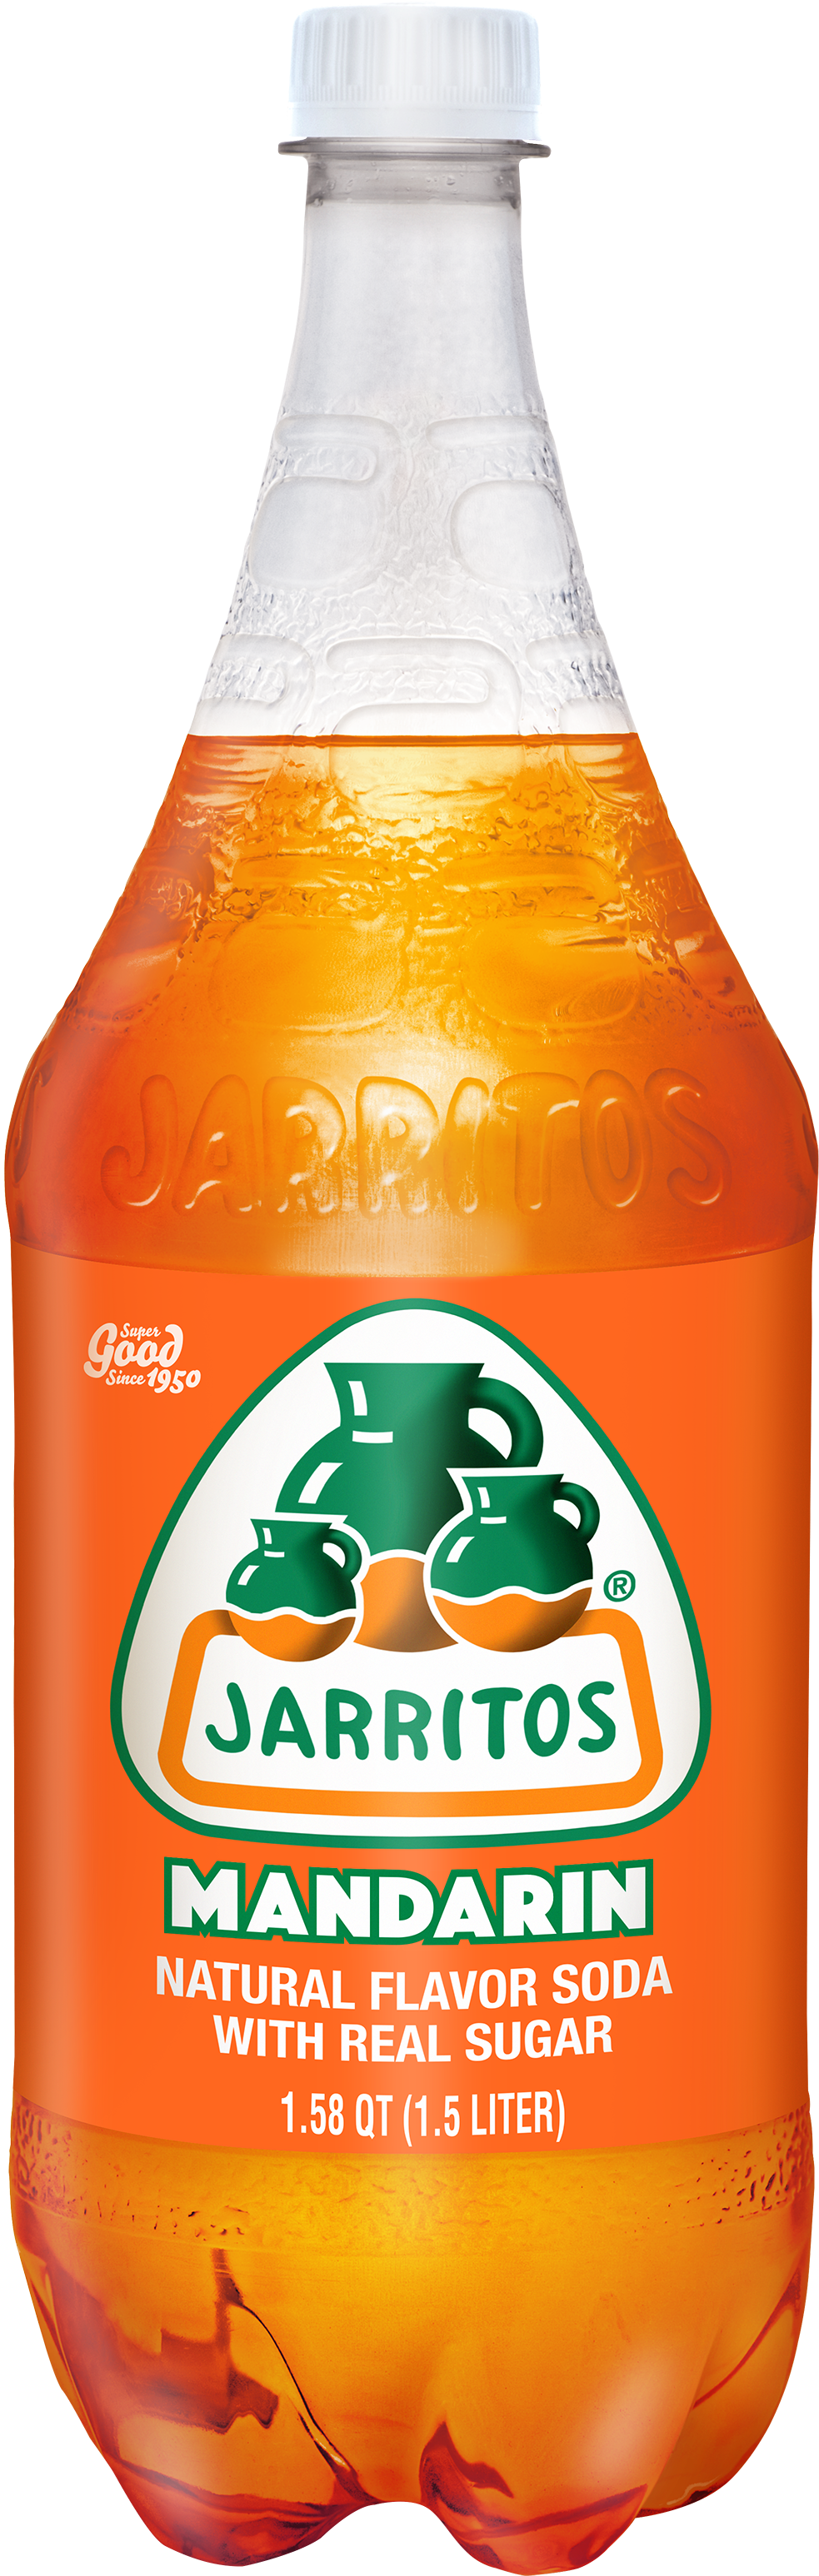 Jarritos Mandarin Soda, Clipart (983x3093), Png Download